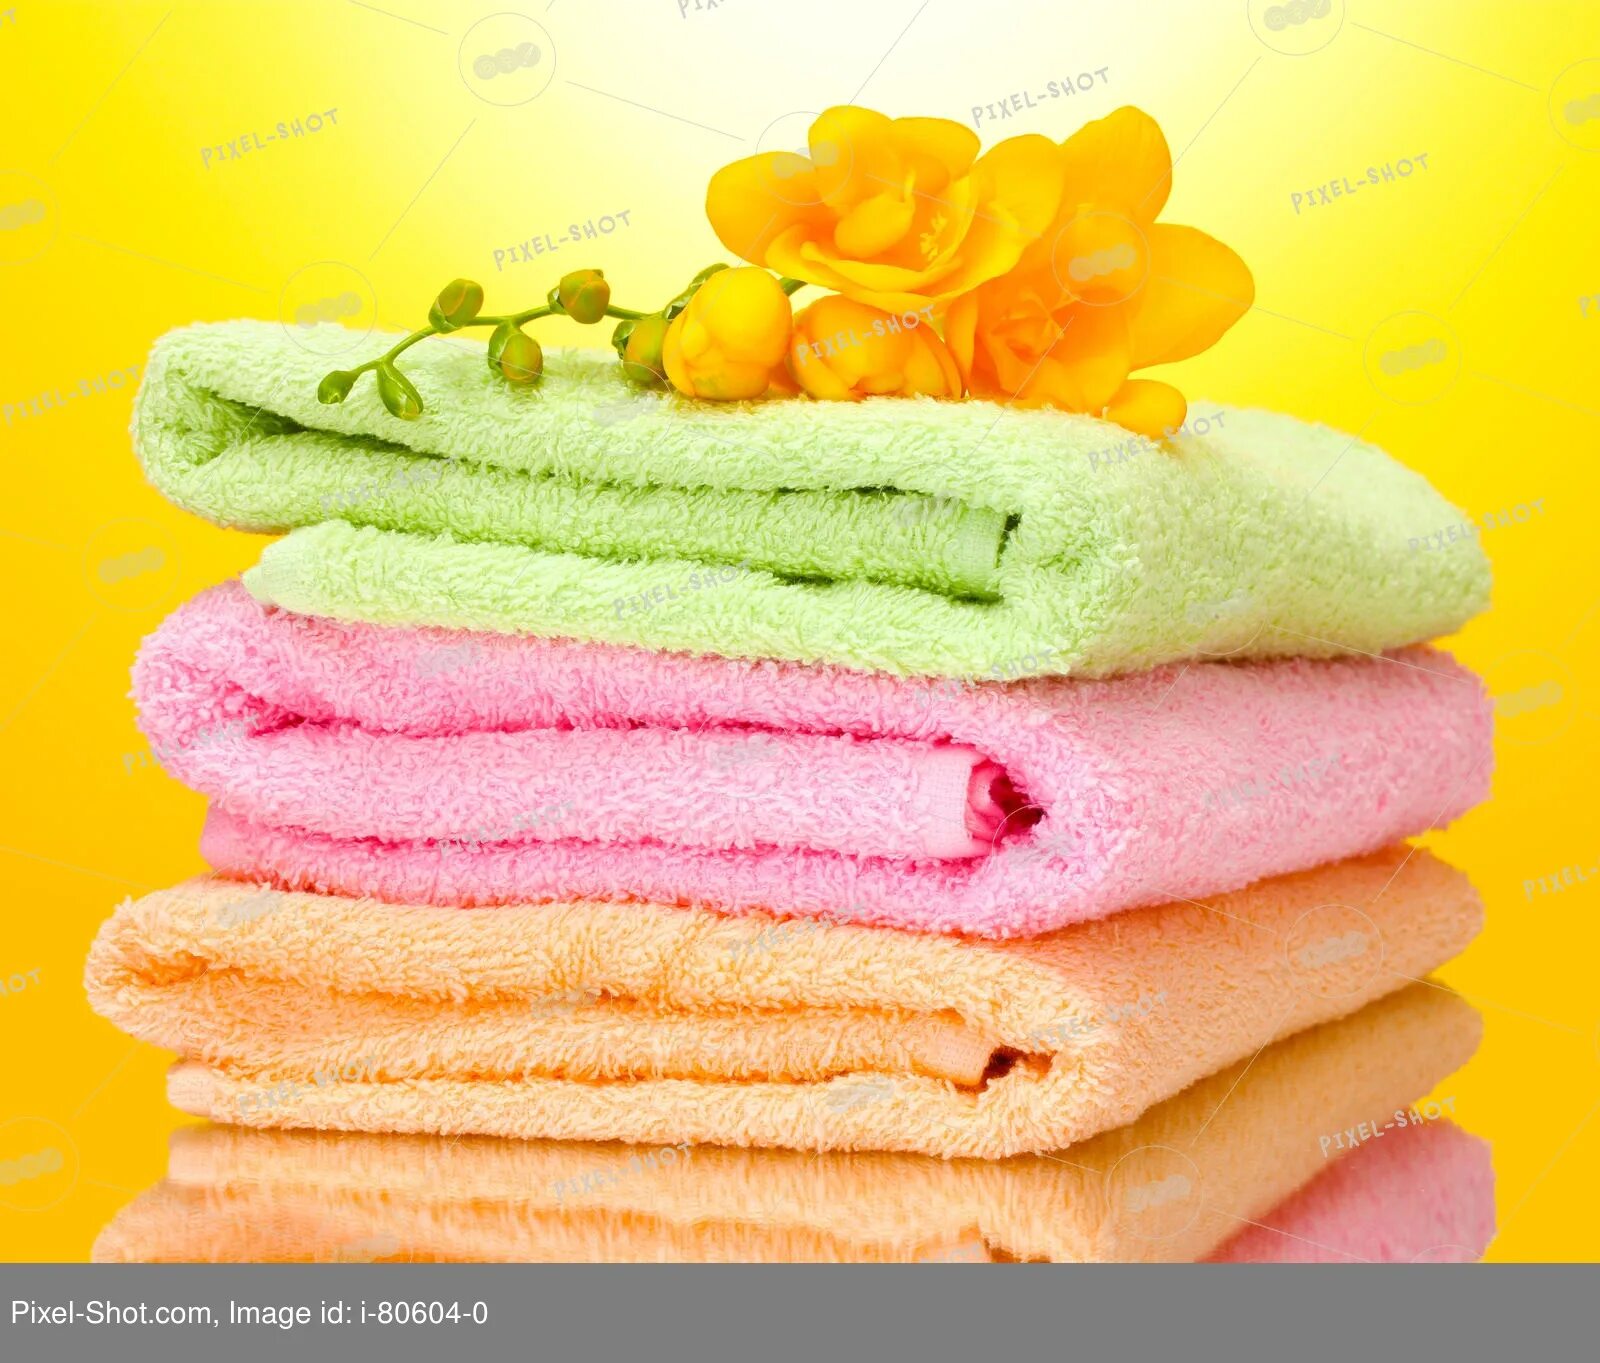 Полотенце моющие средства. Полотенца. Махровые изделия. Халаты и полотенца из махры. Махровые полотенца желтого цвета.